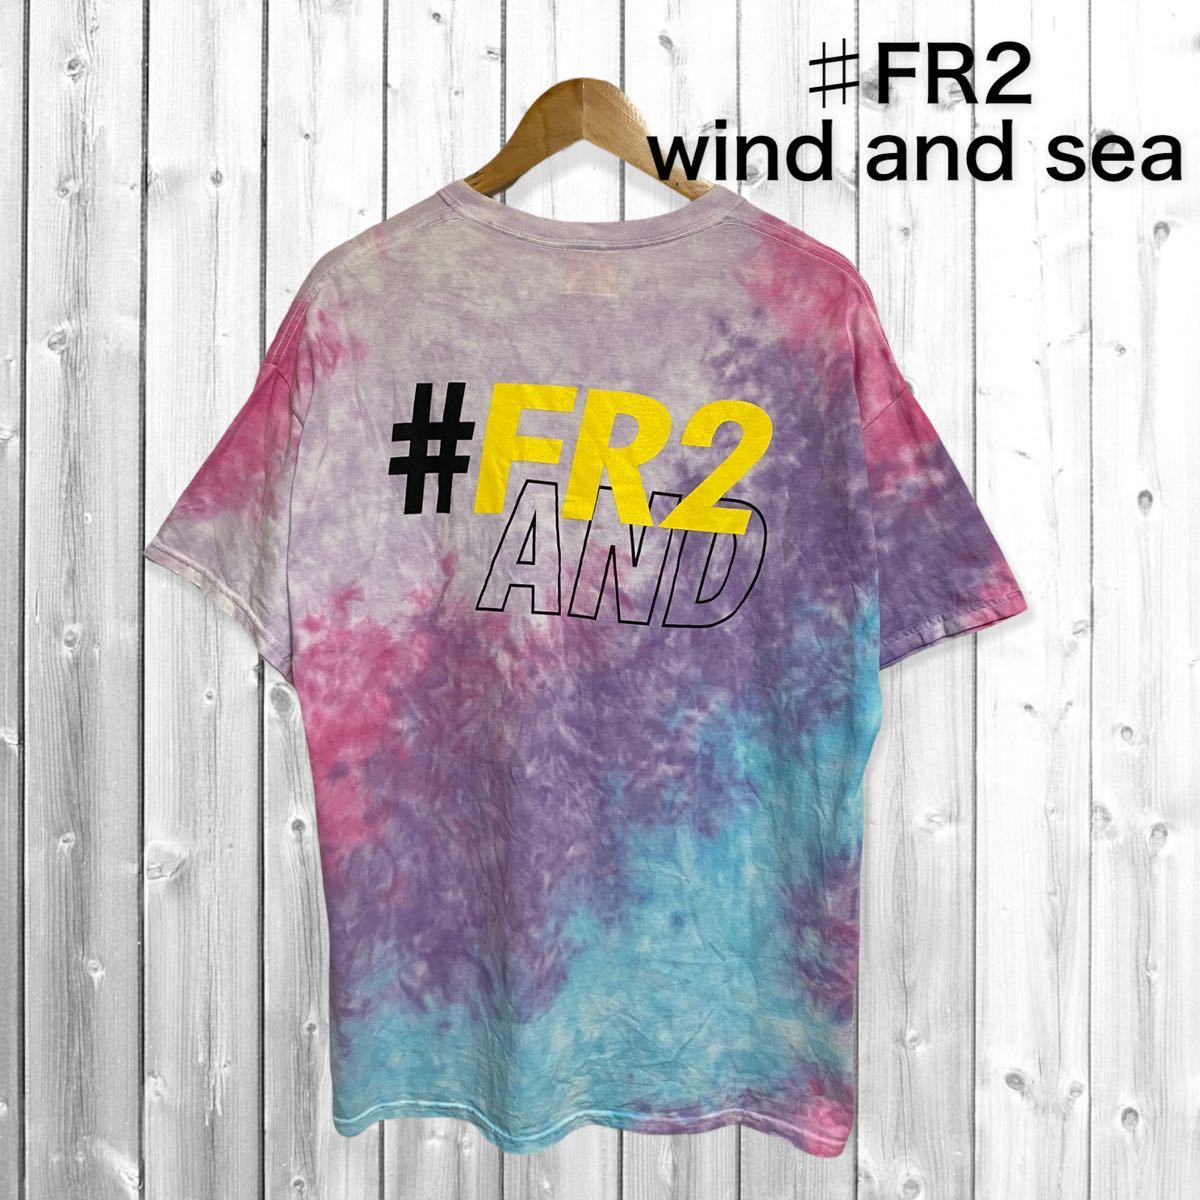 衝撃特価 【希少デザイン】#FR2 wind and sea コラボ タイダイ 刺繍 